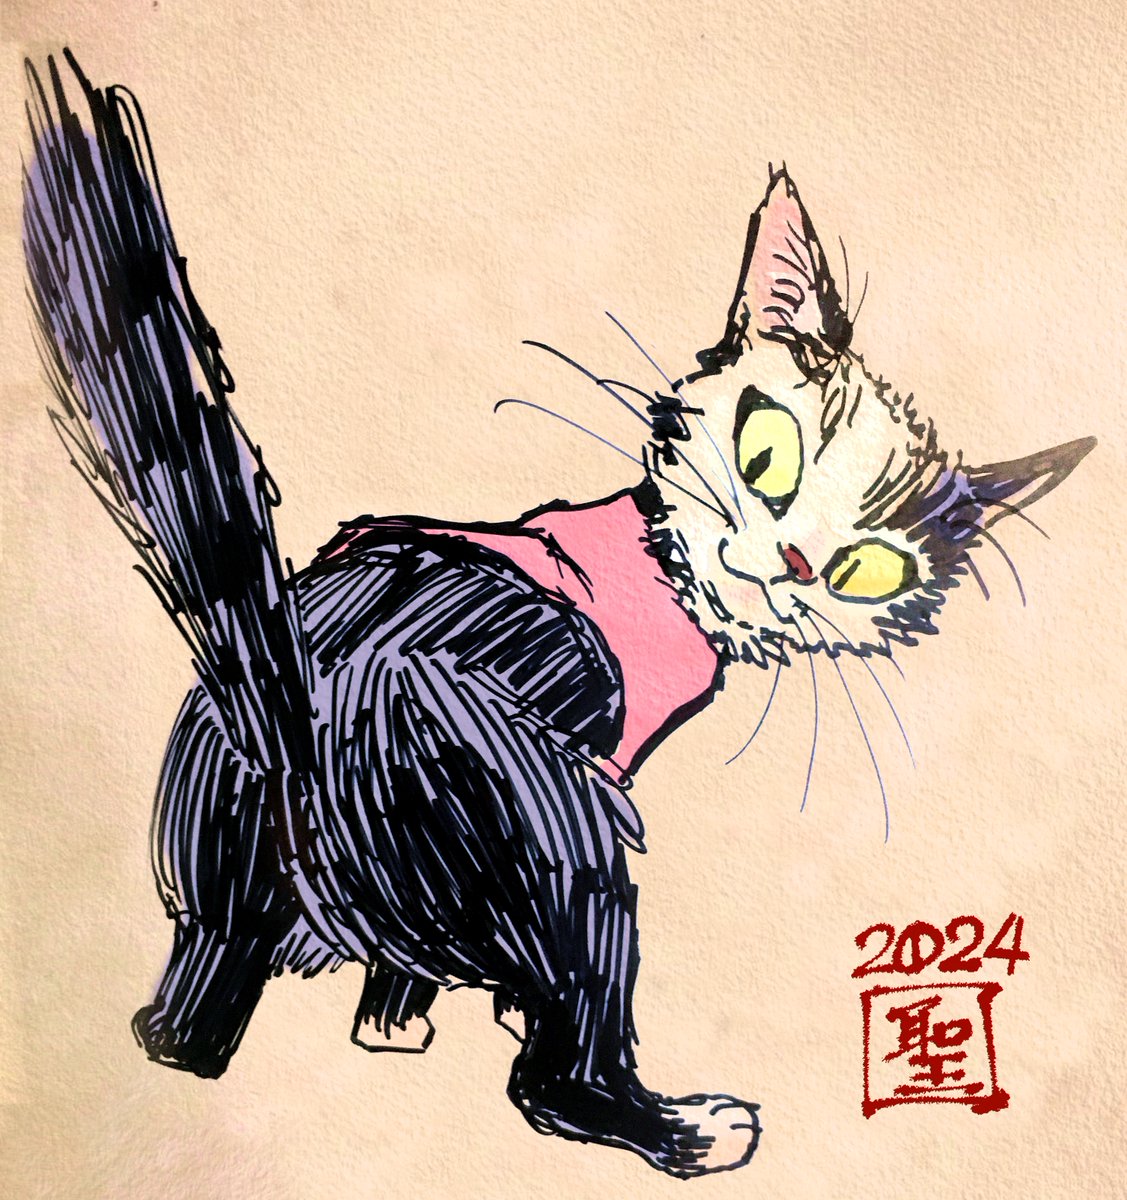 「おはこんばんちは『失礼!』 」|CatCuts ✴︎日々猫絵描く漫画編集者のイラスト